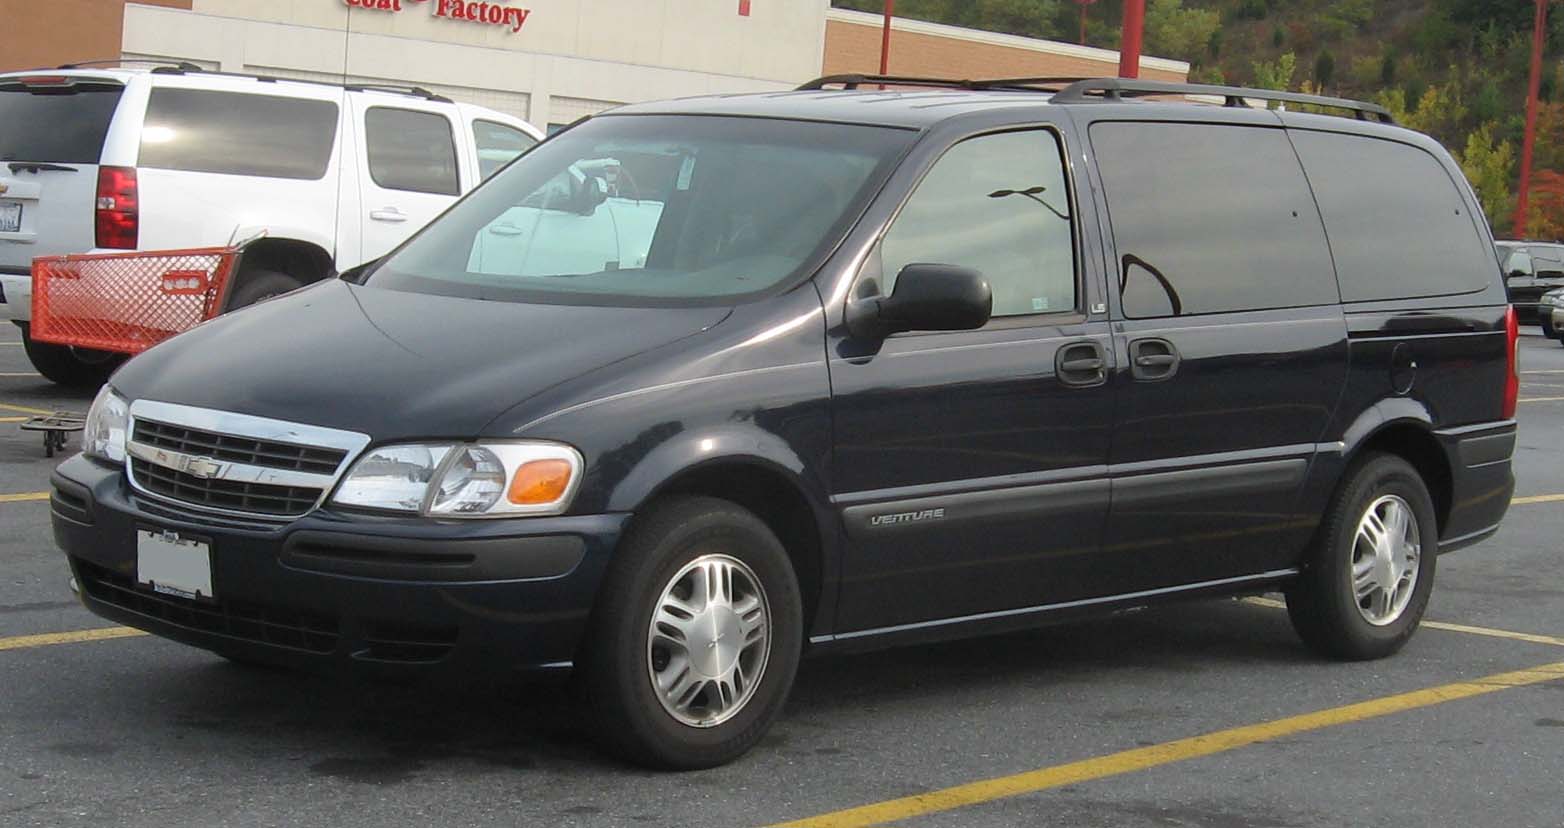 Chevrolet Venture Wikipedia